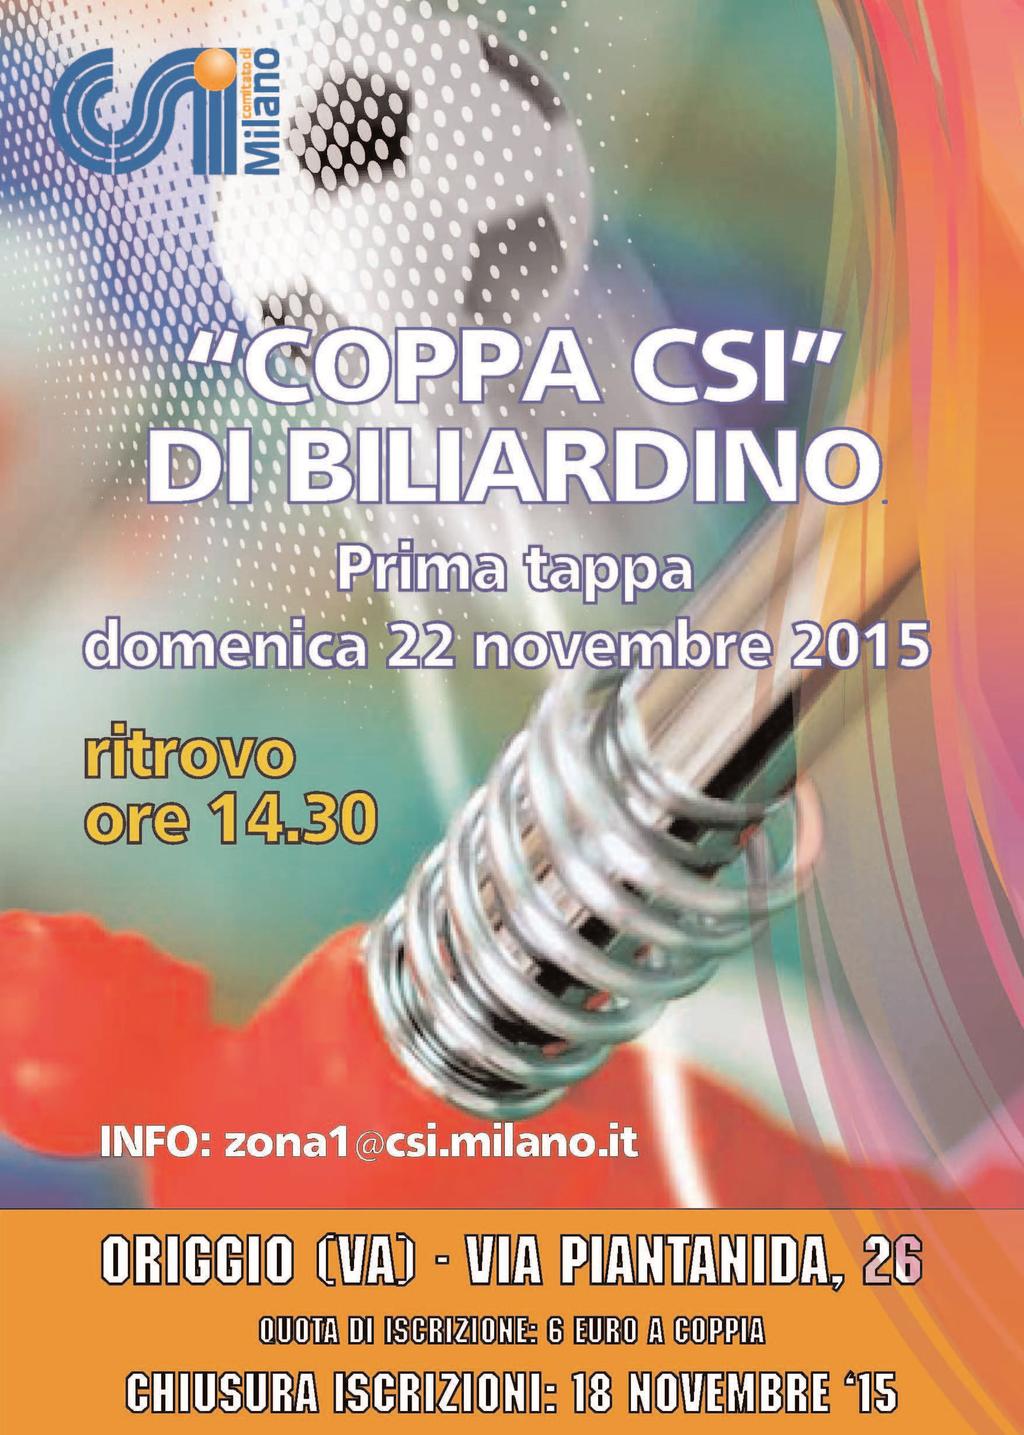 8 Domenica 22 novembre alle ore 15.00, in via Piantanida 26 a Origgio, si svolgerà la 1 tappa della coppa Csi di biliardino.